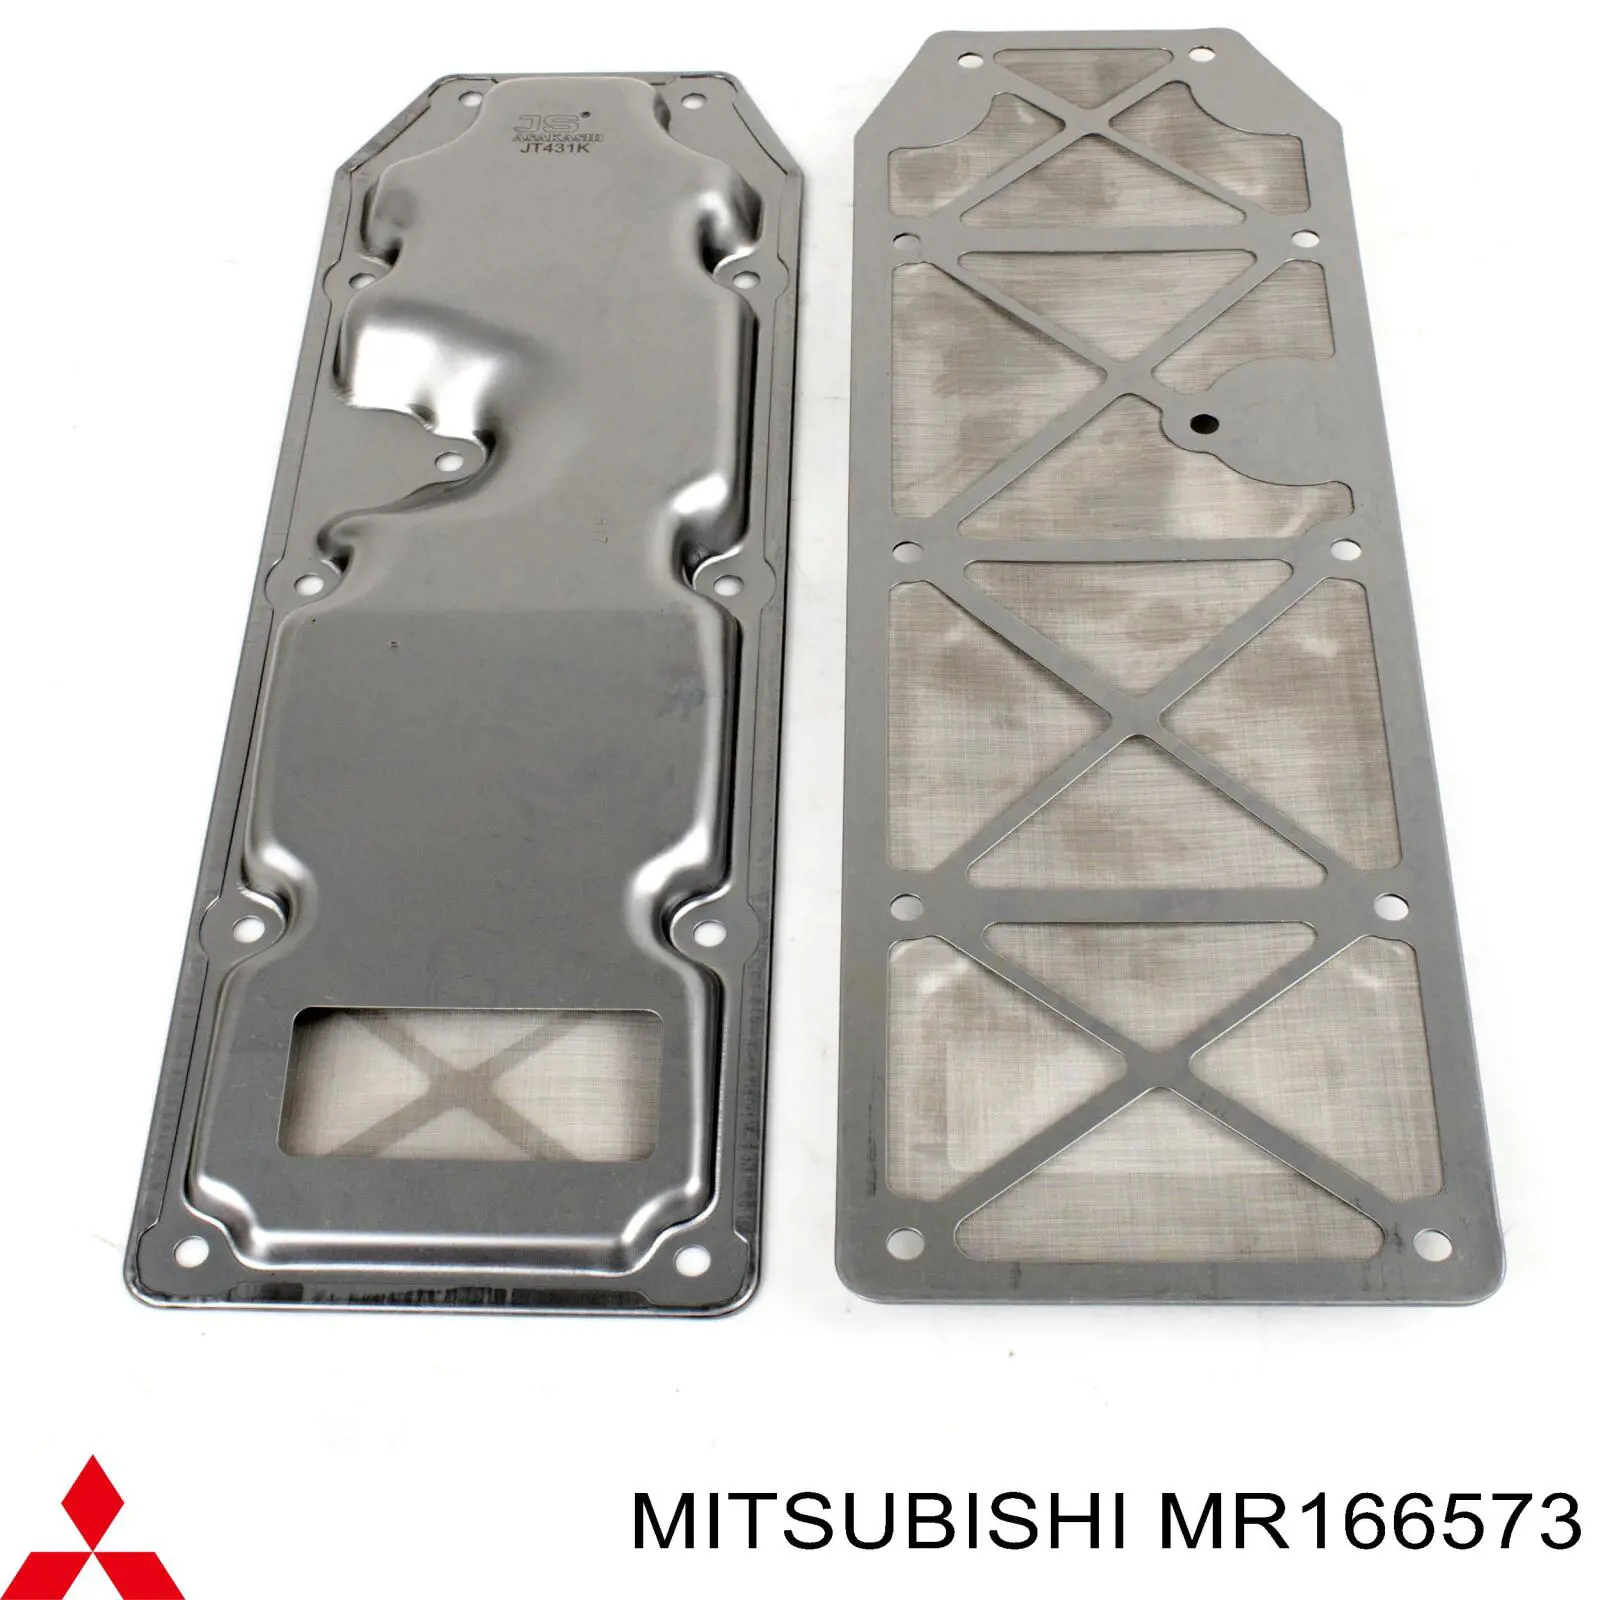 MR166573 Mitsubishi filtro caja de cambios automática